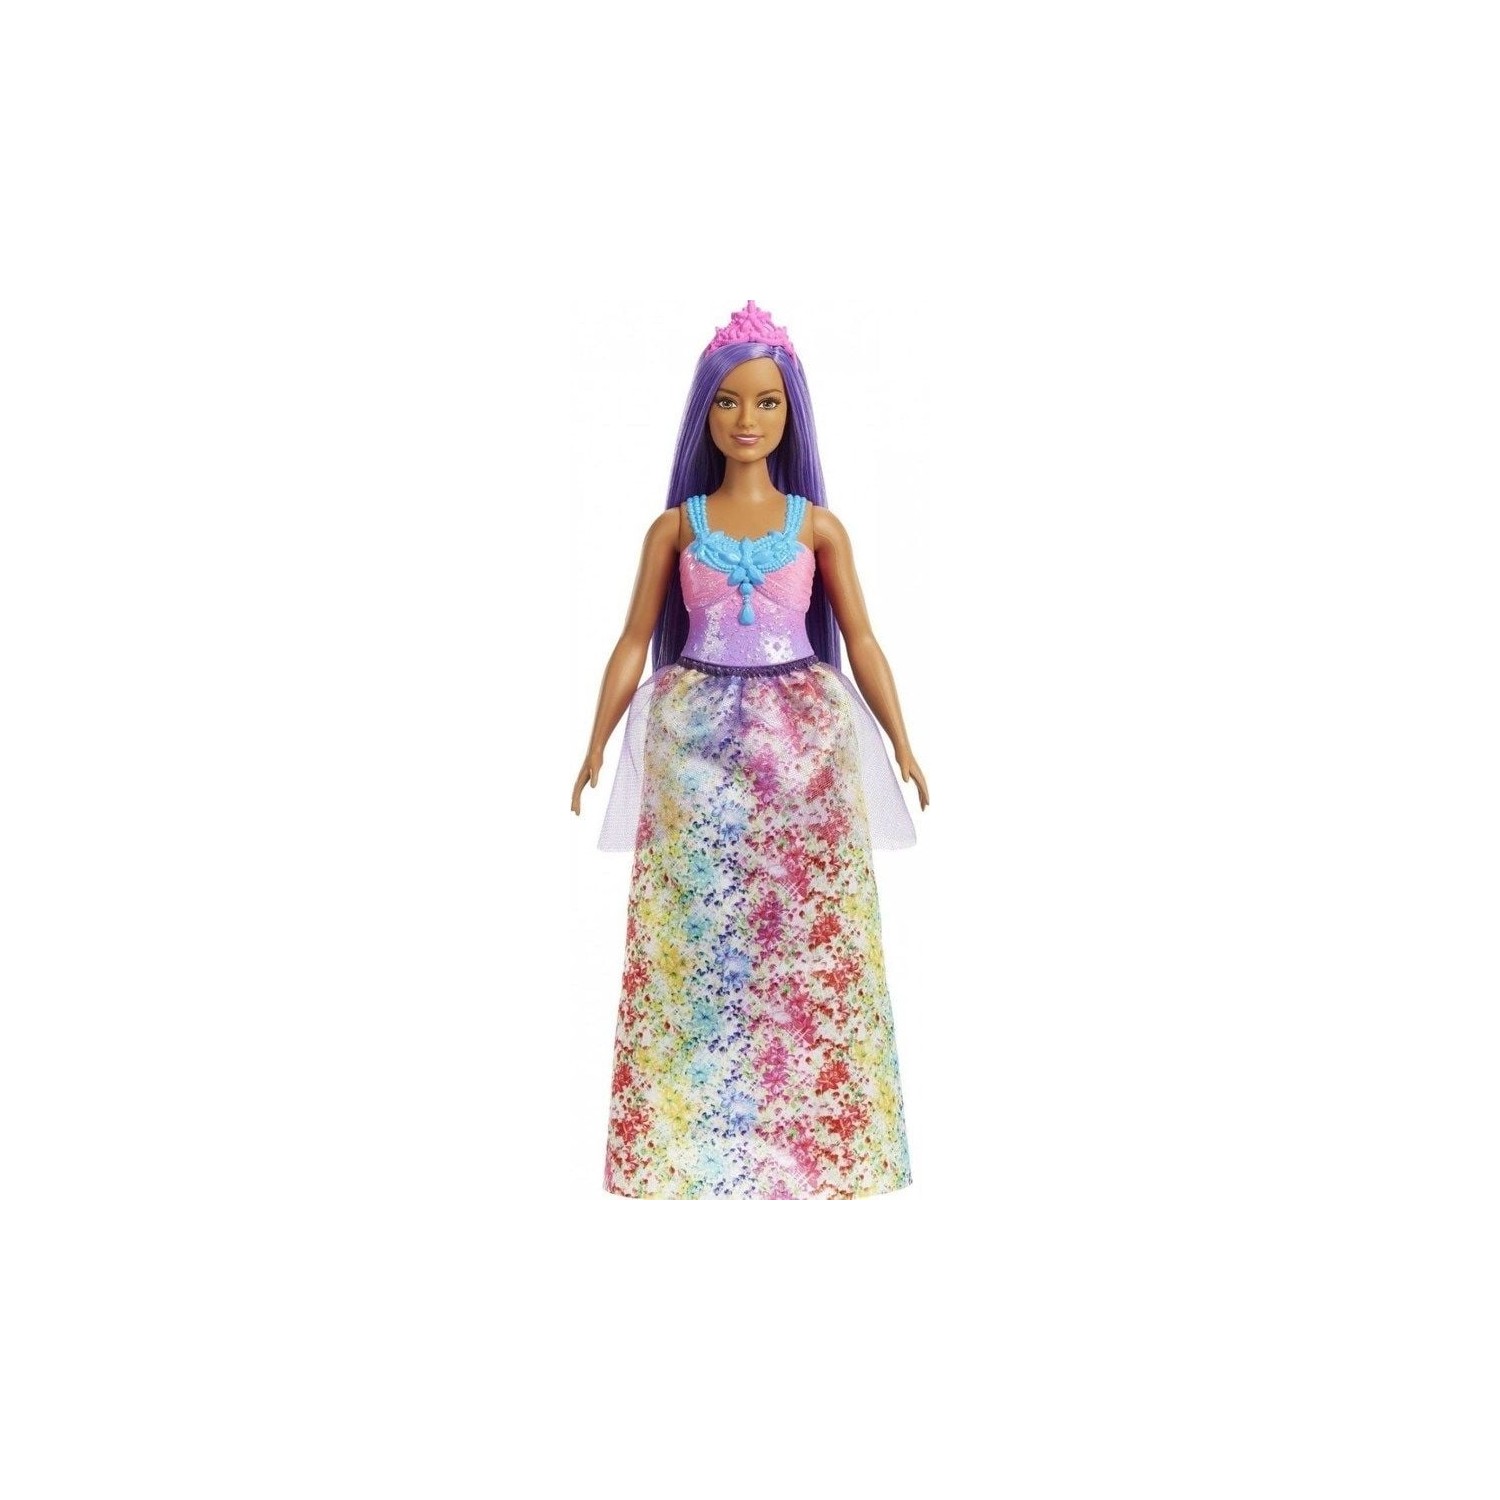 Кукла Barbie Dreamtopia Princess Dolls HGR16 кукла barbie dreamtopia princess fjc95